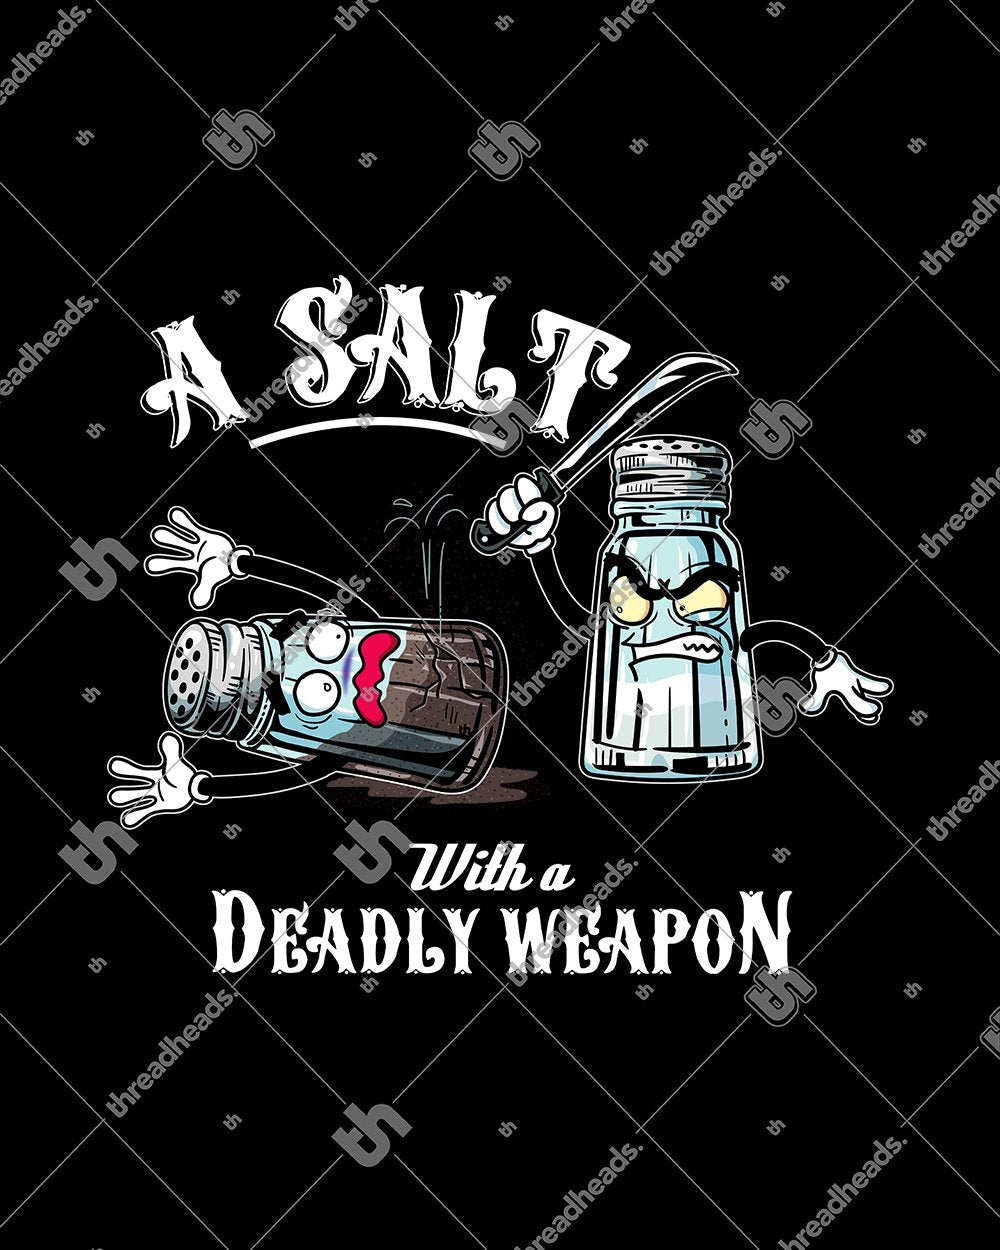 A Salt with a Deadly Weapon T-Shirt Australia Online #colour_black